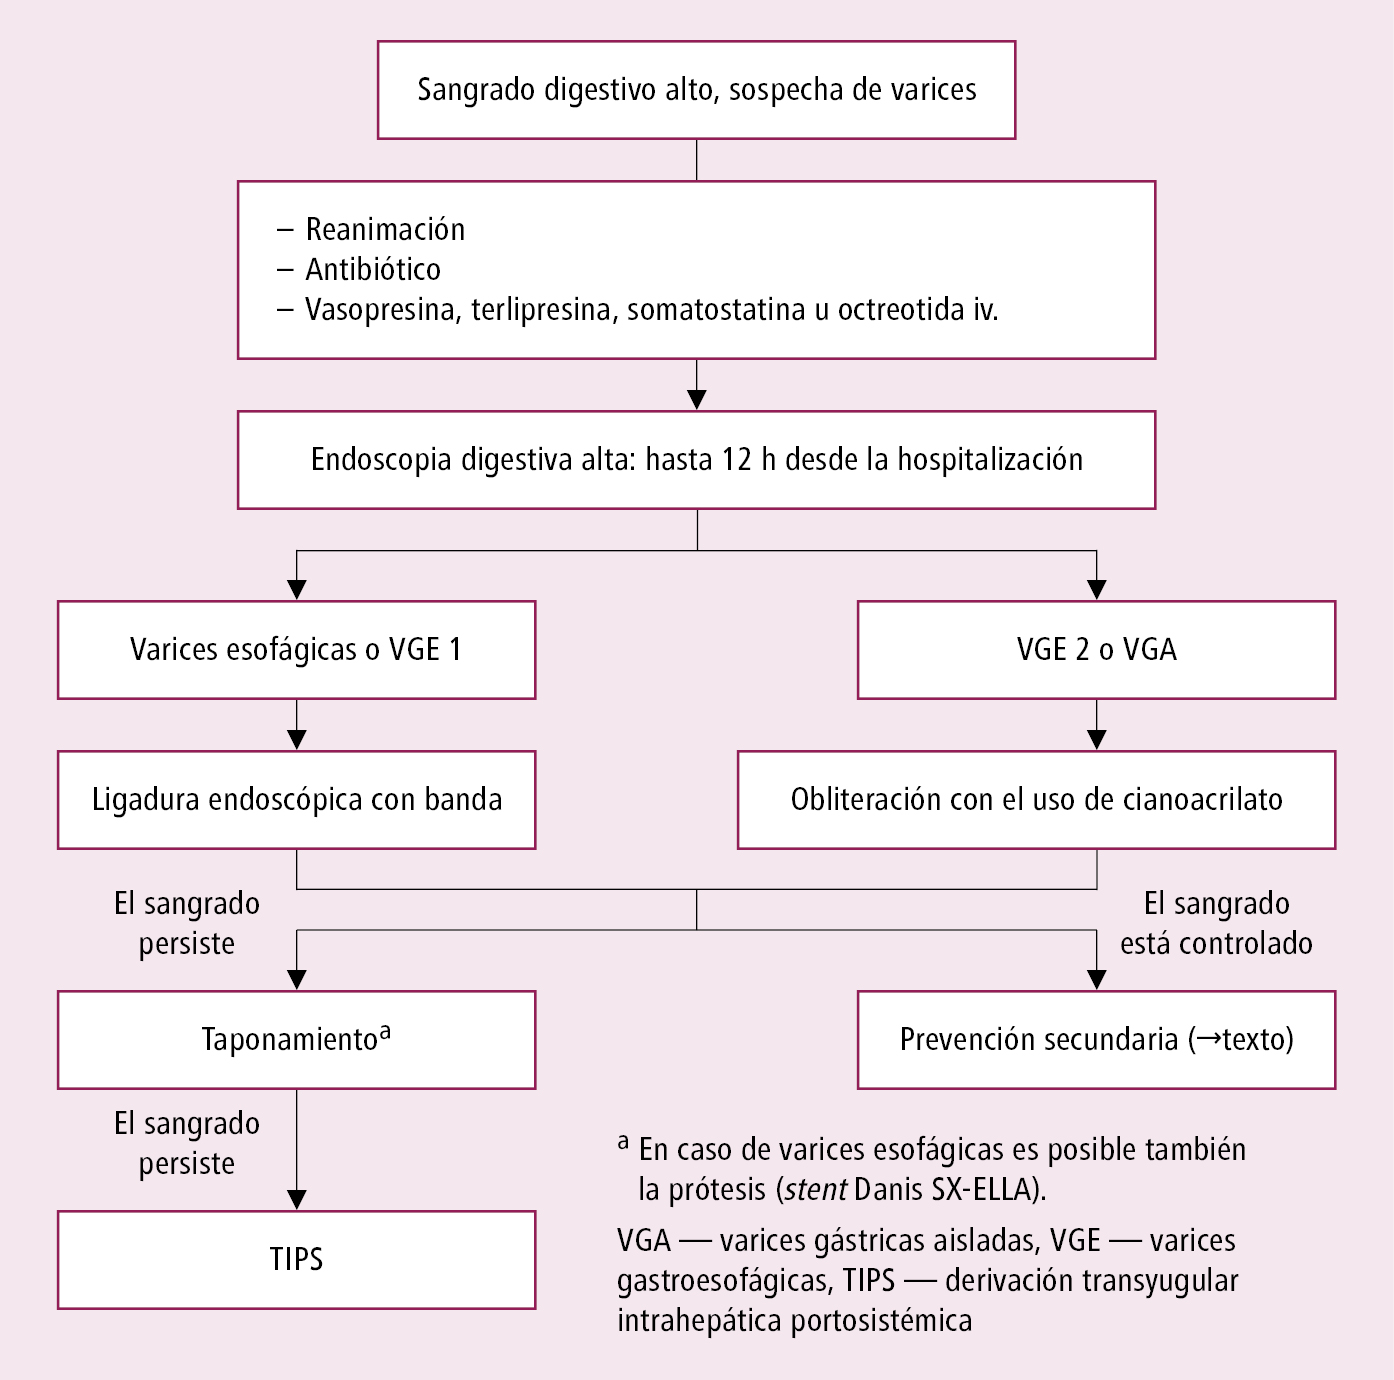    Fig. 4.30-3.  Algoritmo de actuación en la hemorragia por varices esofágicas 